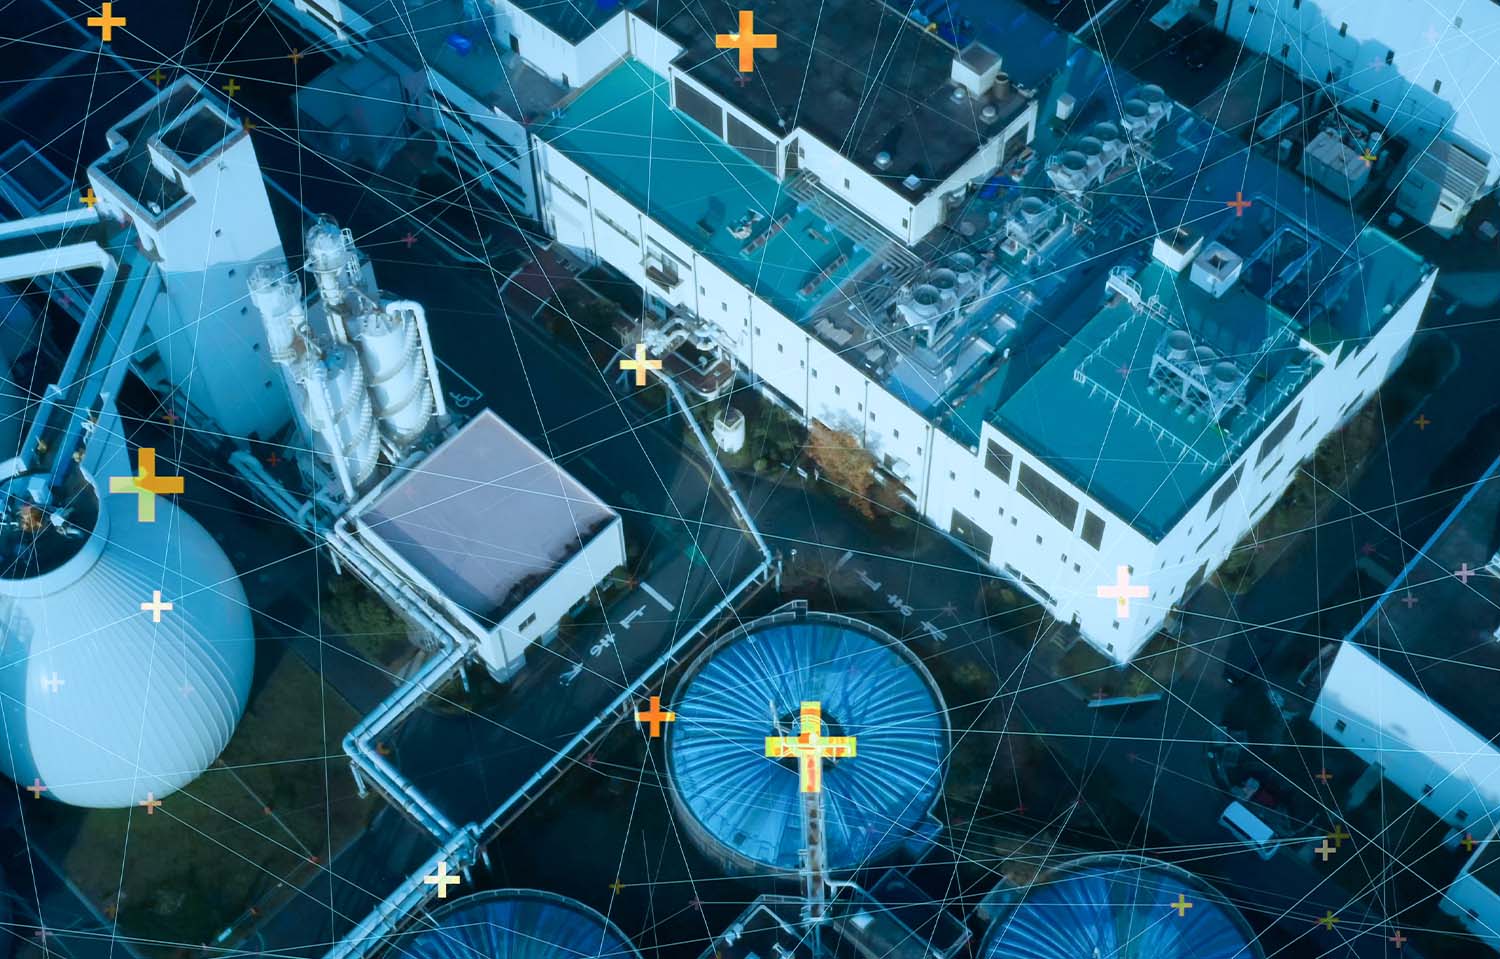 Prédios e construções de uma fábrica vistos de cima, em um tom azulado. Por cima dos prédios e construções, elementos gráficos de linhas e pontos de localização, simulando que todos os elementos estão conectados